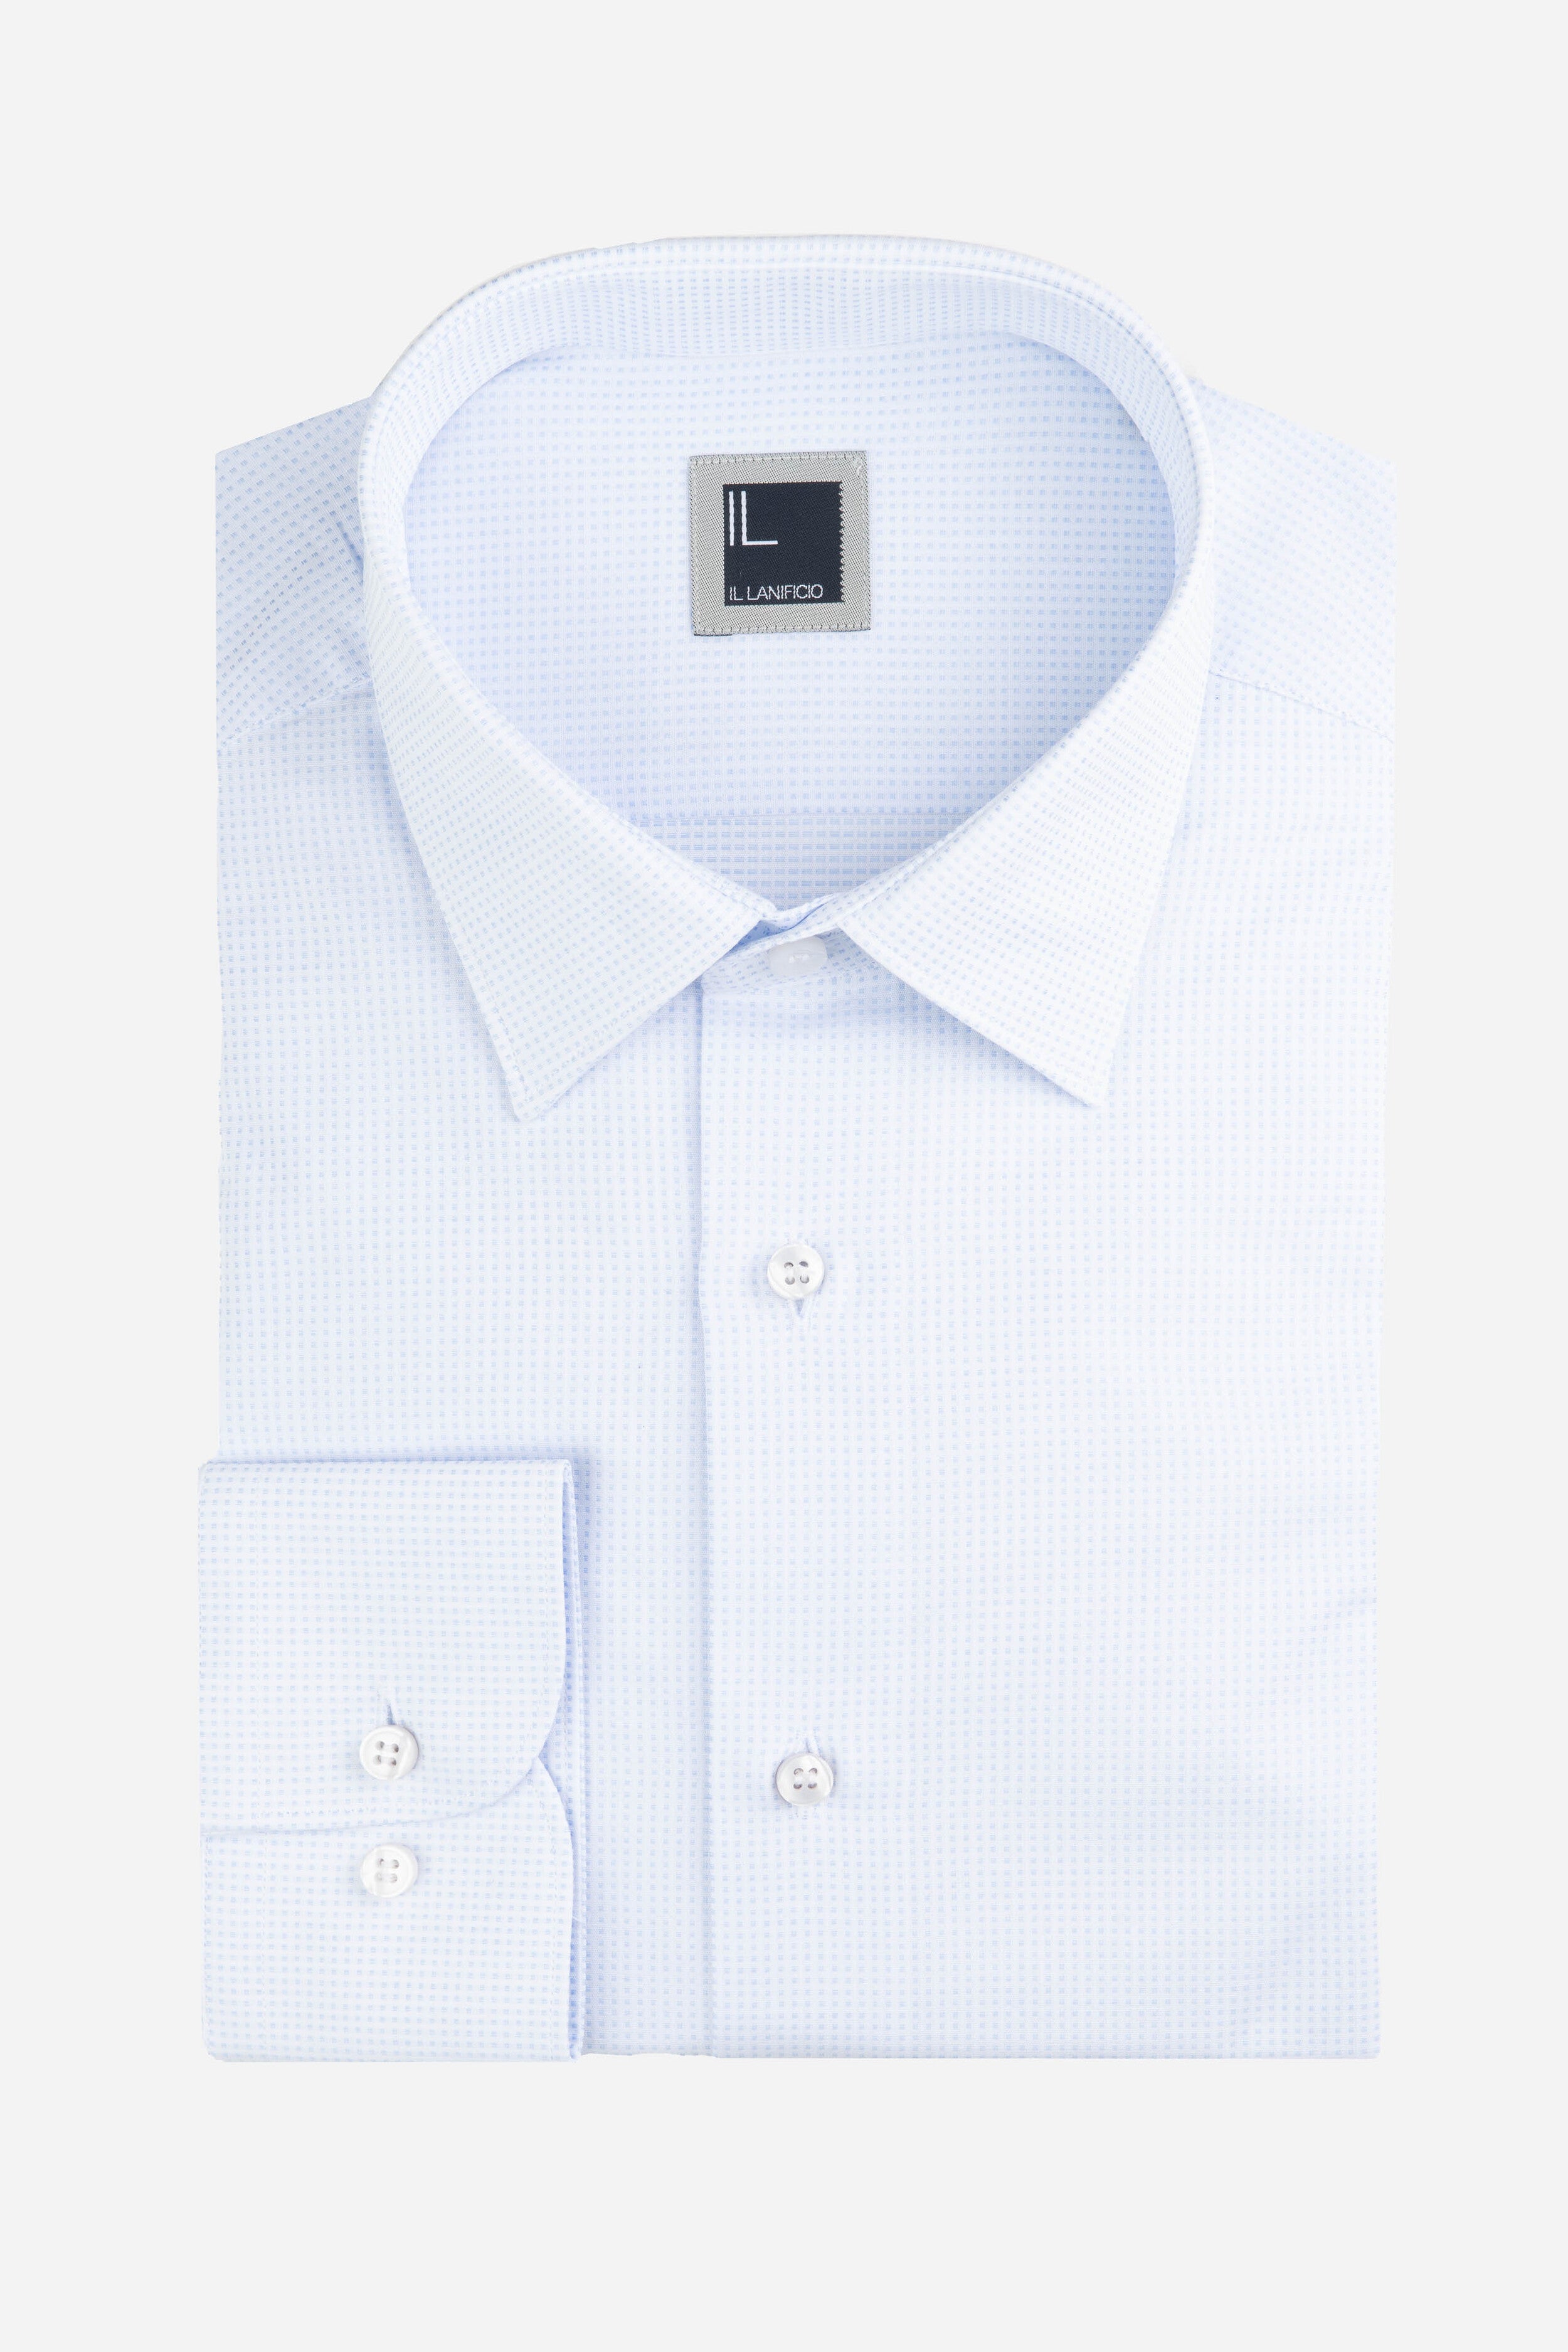 Regular patterned shirt - White-Light blue pattern